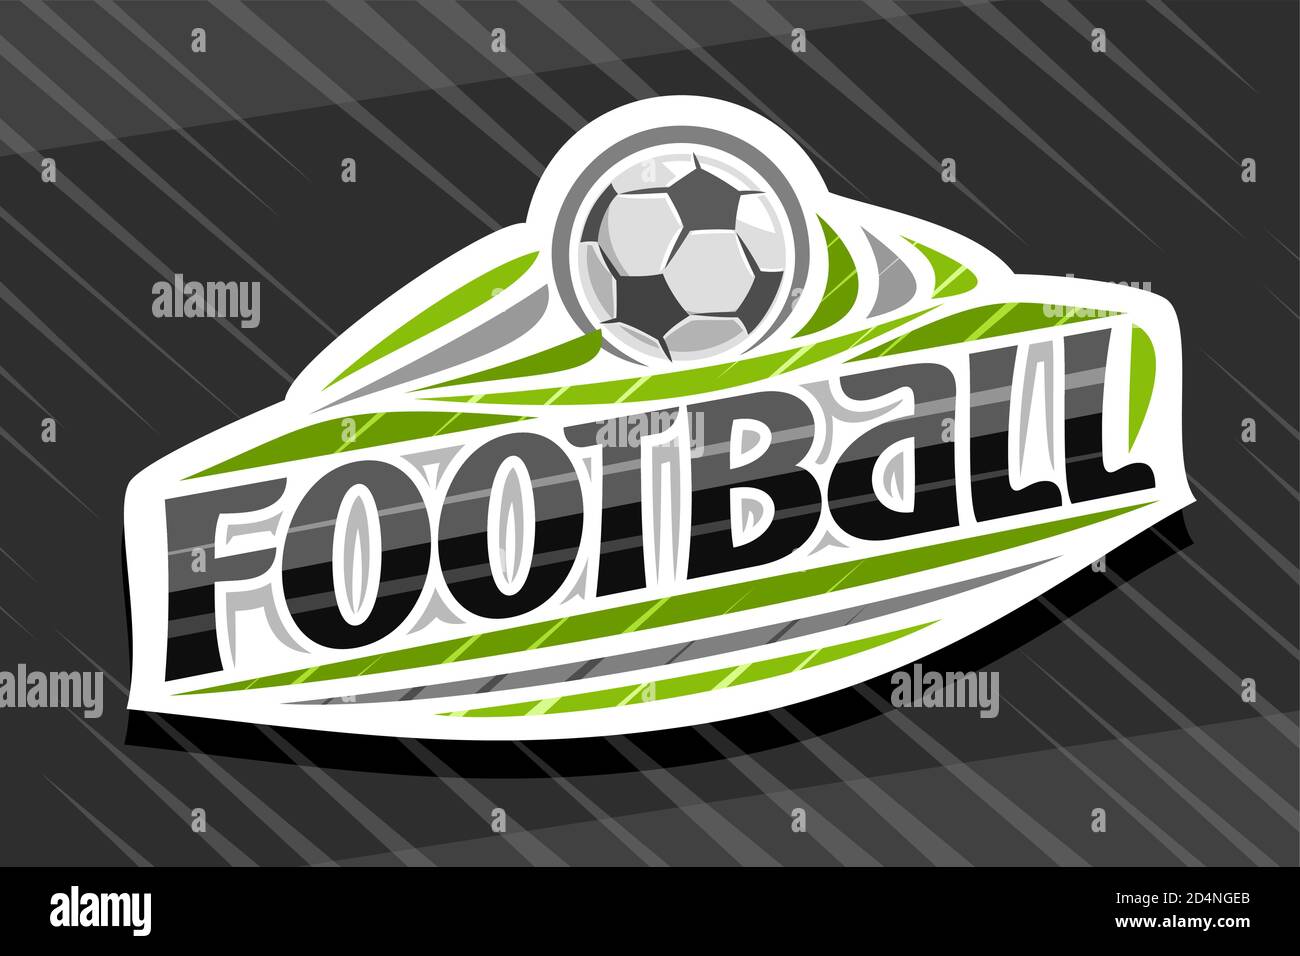 Logo Vector per Football Sport, emblema bianco moderno con illustrazione  della palla volante in gol, scritta unica per il calcio parola nera, segno  sportivo wi Immagine e Vettoriale - Alamy